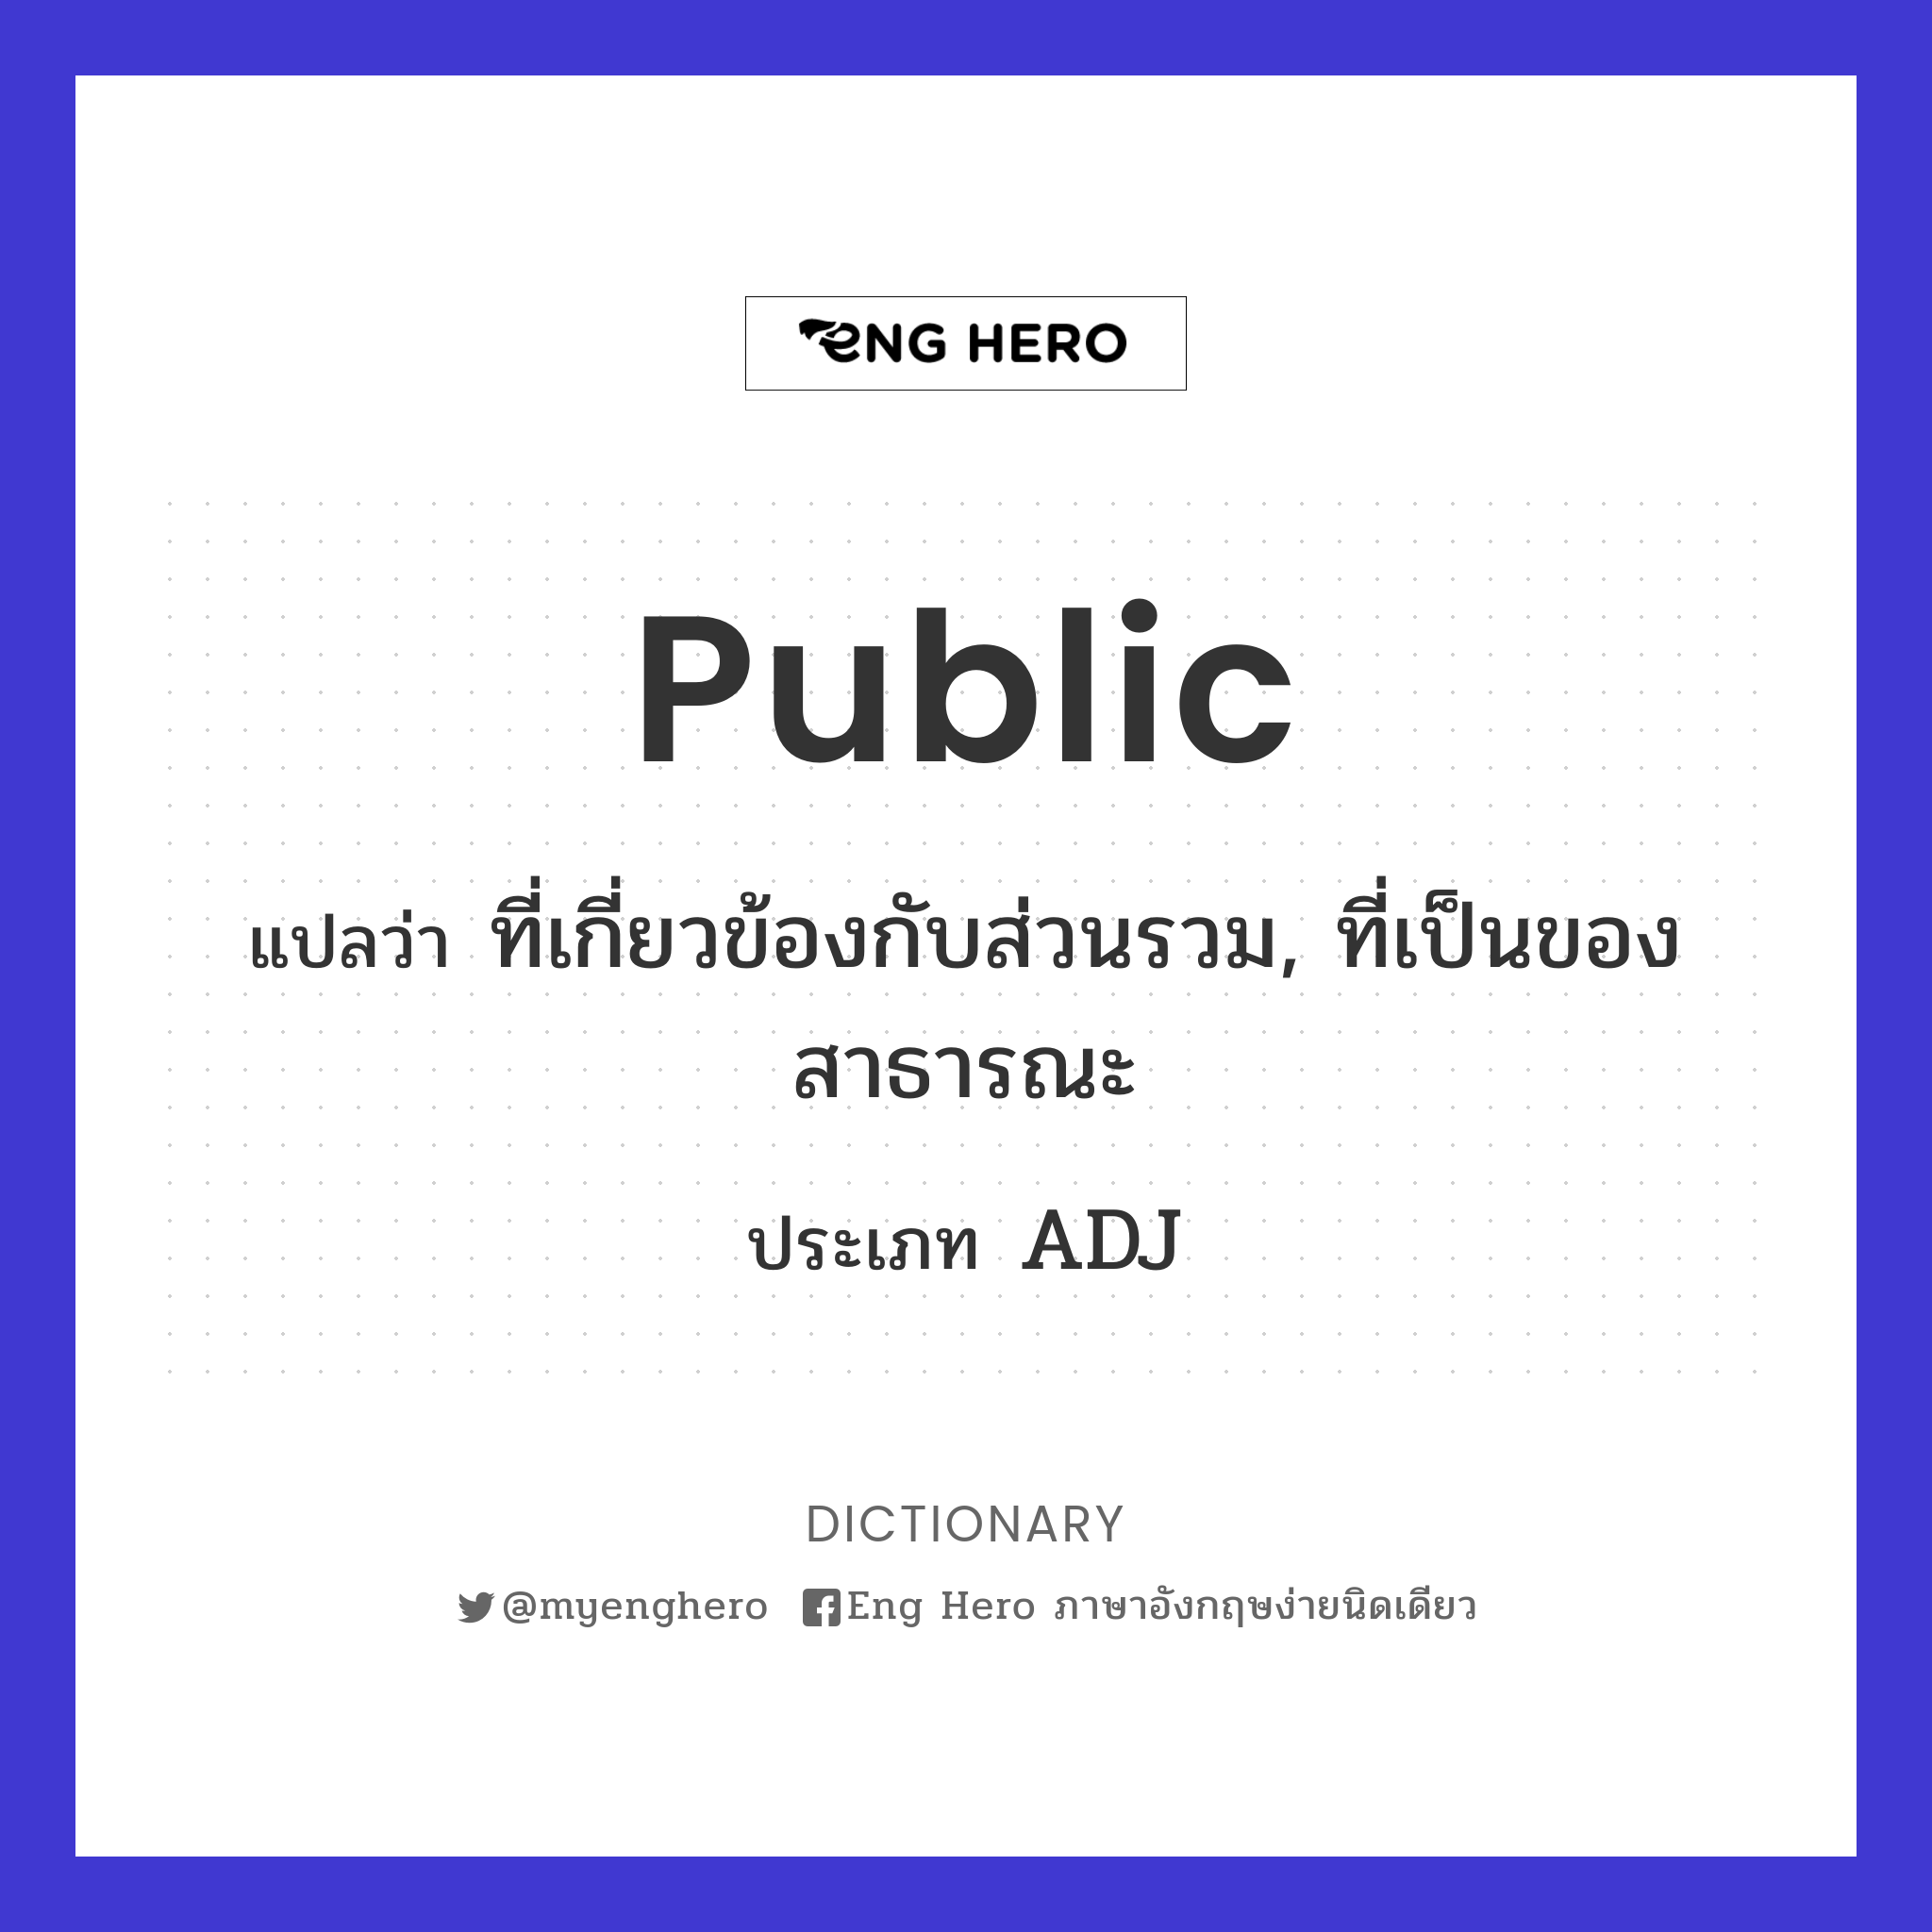 public